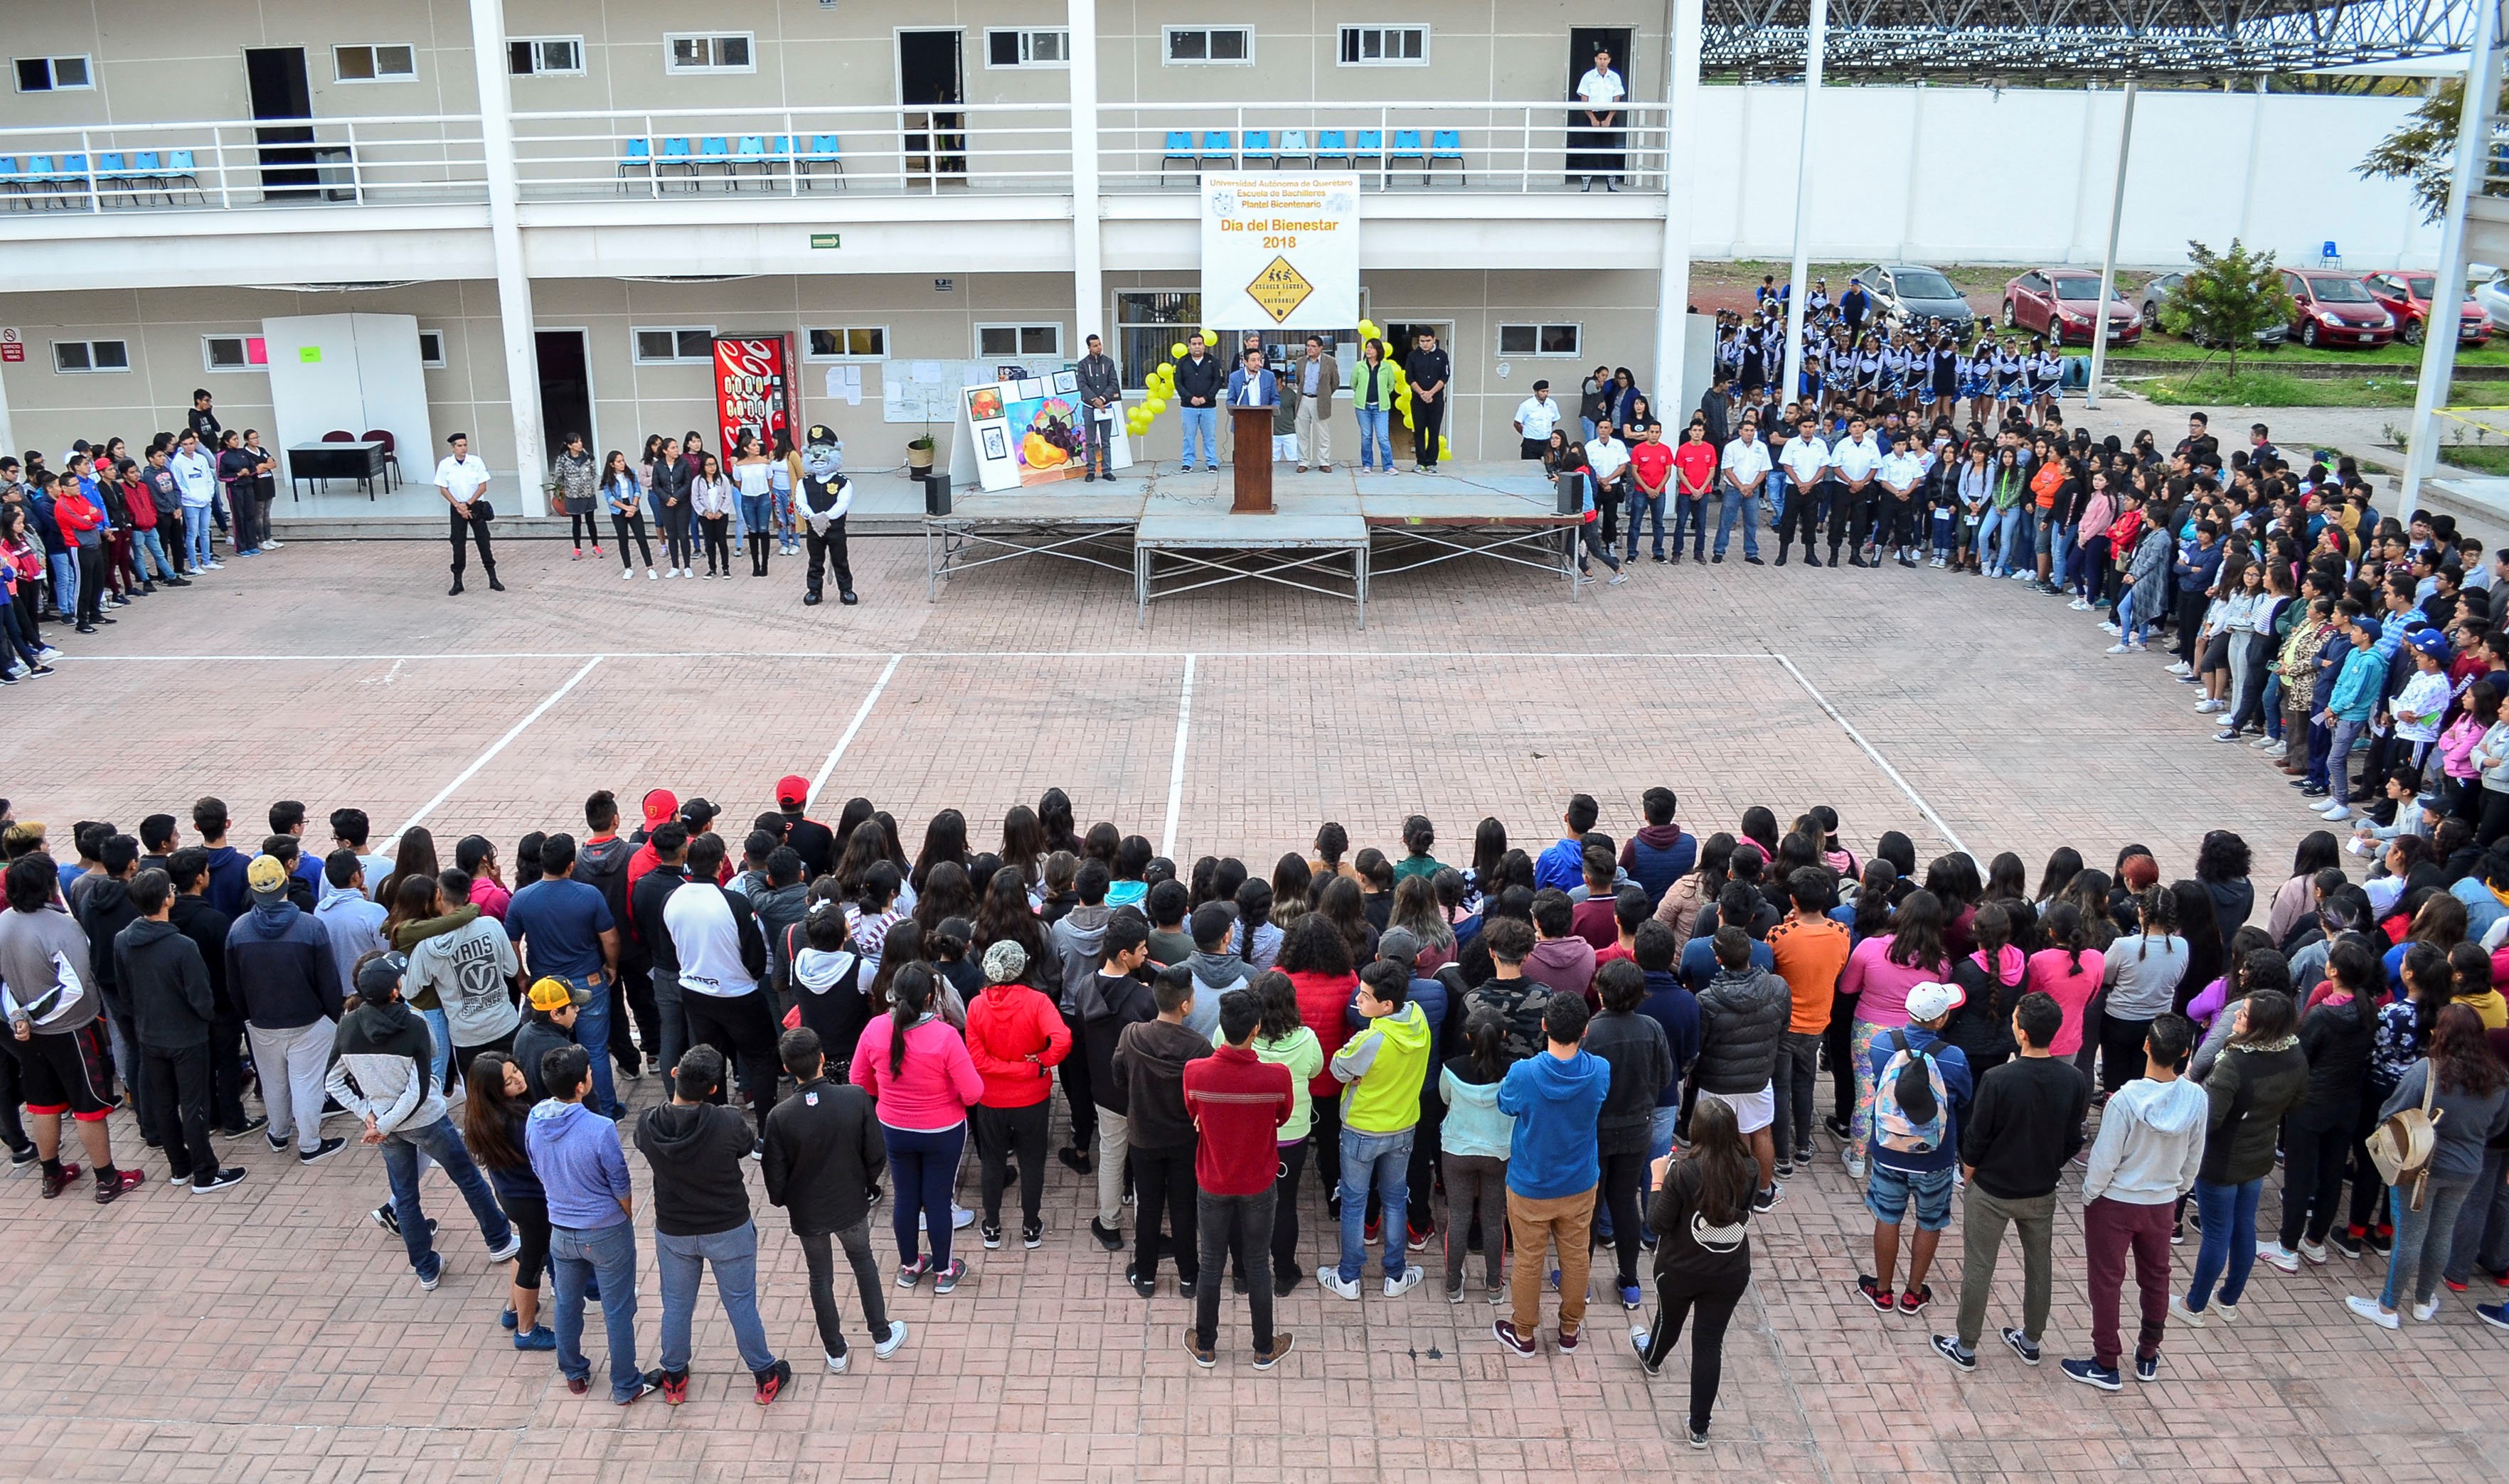  Escuela de Bachilleres, Plantel Bicentenario, de la UAQ ofrece el “Día del Bienestar”